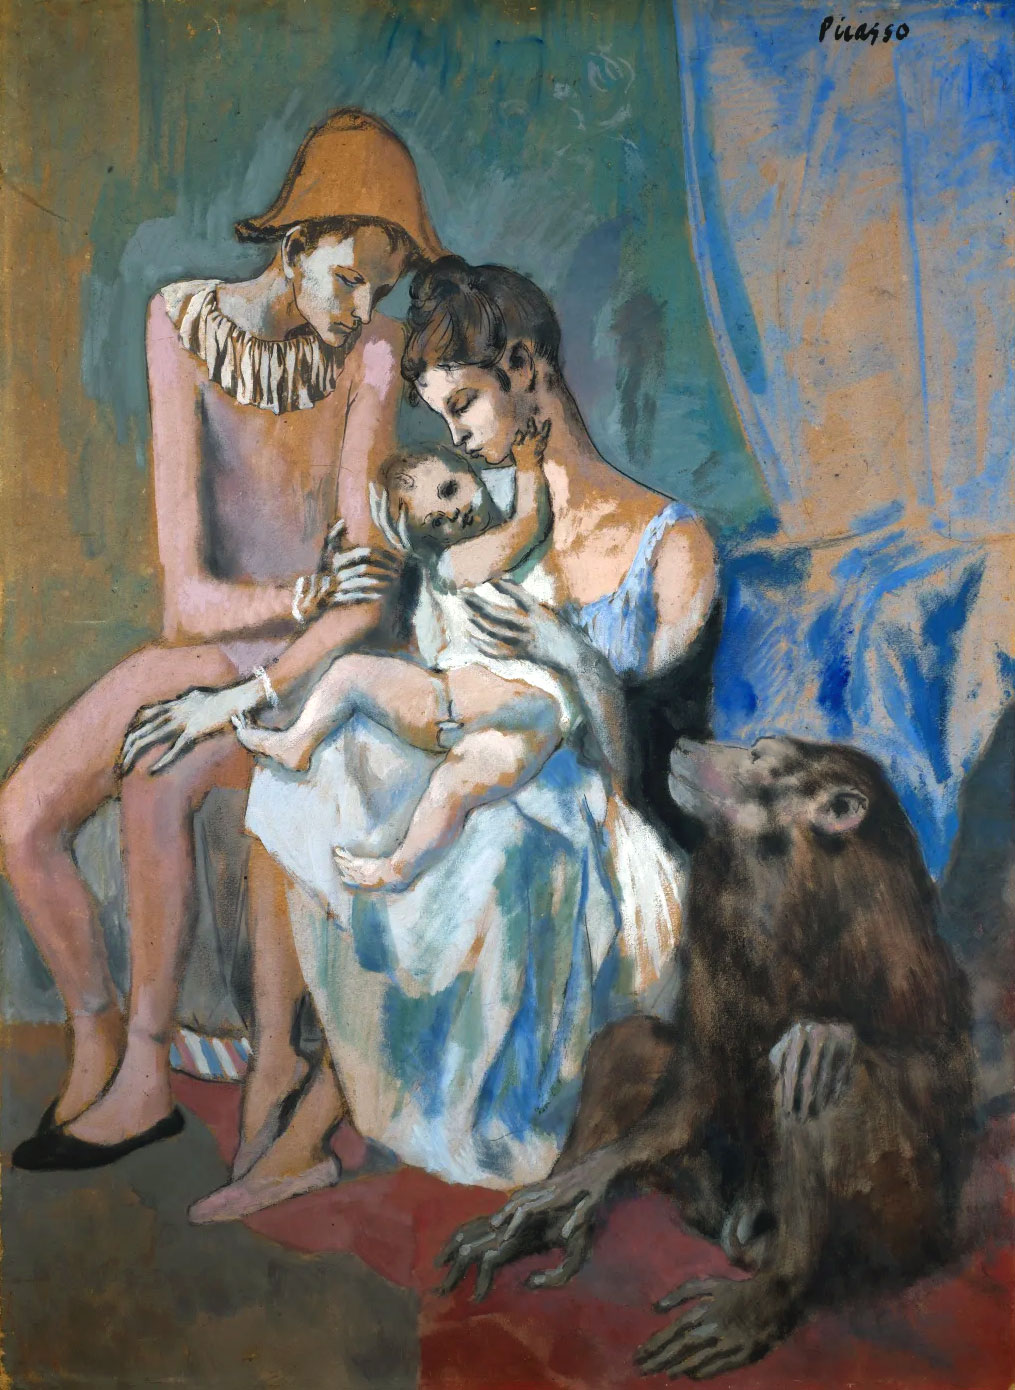 Famiglia di acrobati con scimmia, quadro di Picasso (Acrobat Family, 1905)